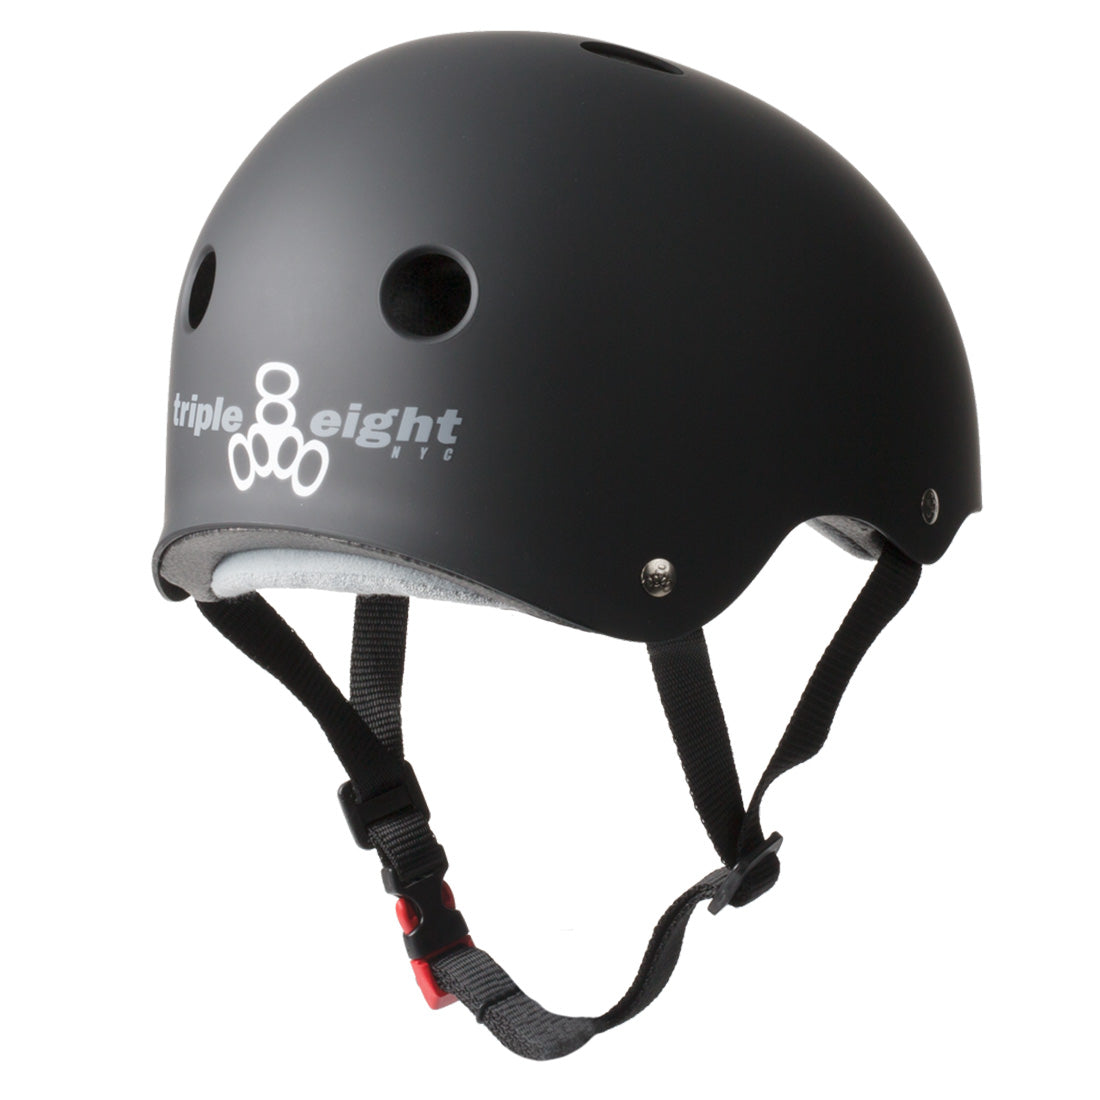 Triple 8 THE Cert SS Helmet - Black Rubber Helmets